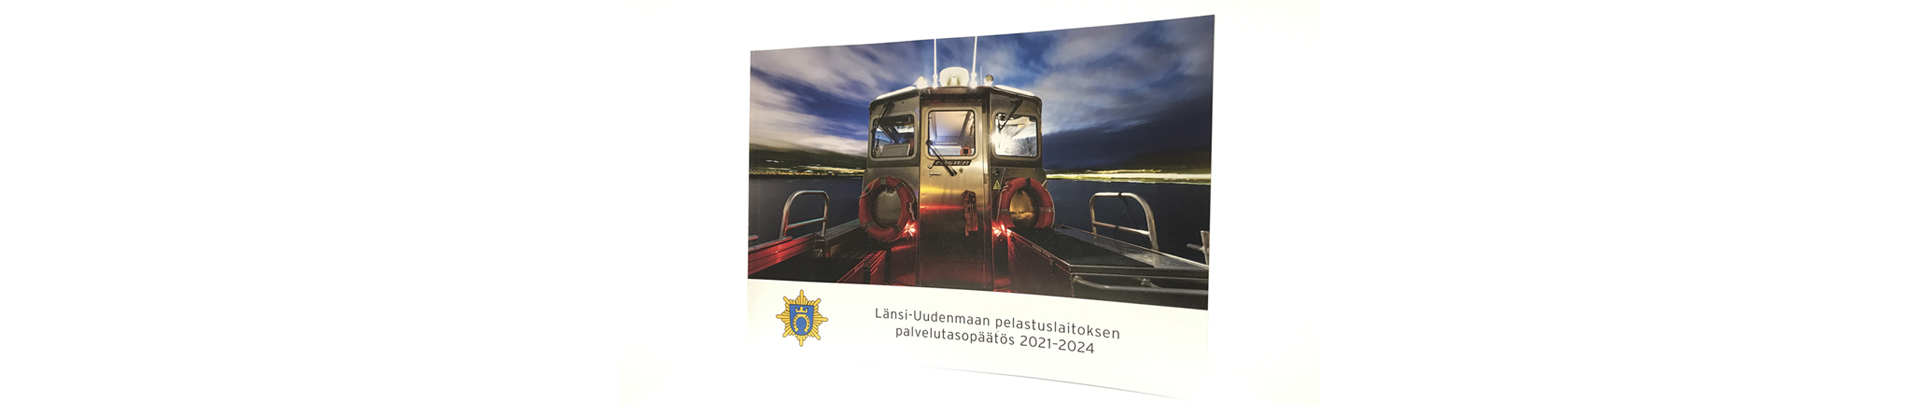 Västra Nylands räddningsverks bestlut om servicenivå omslag.